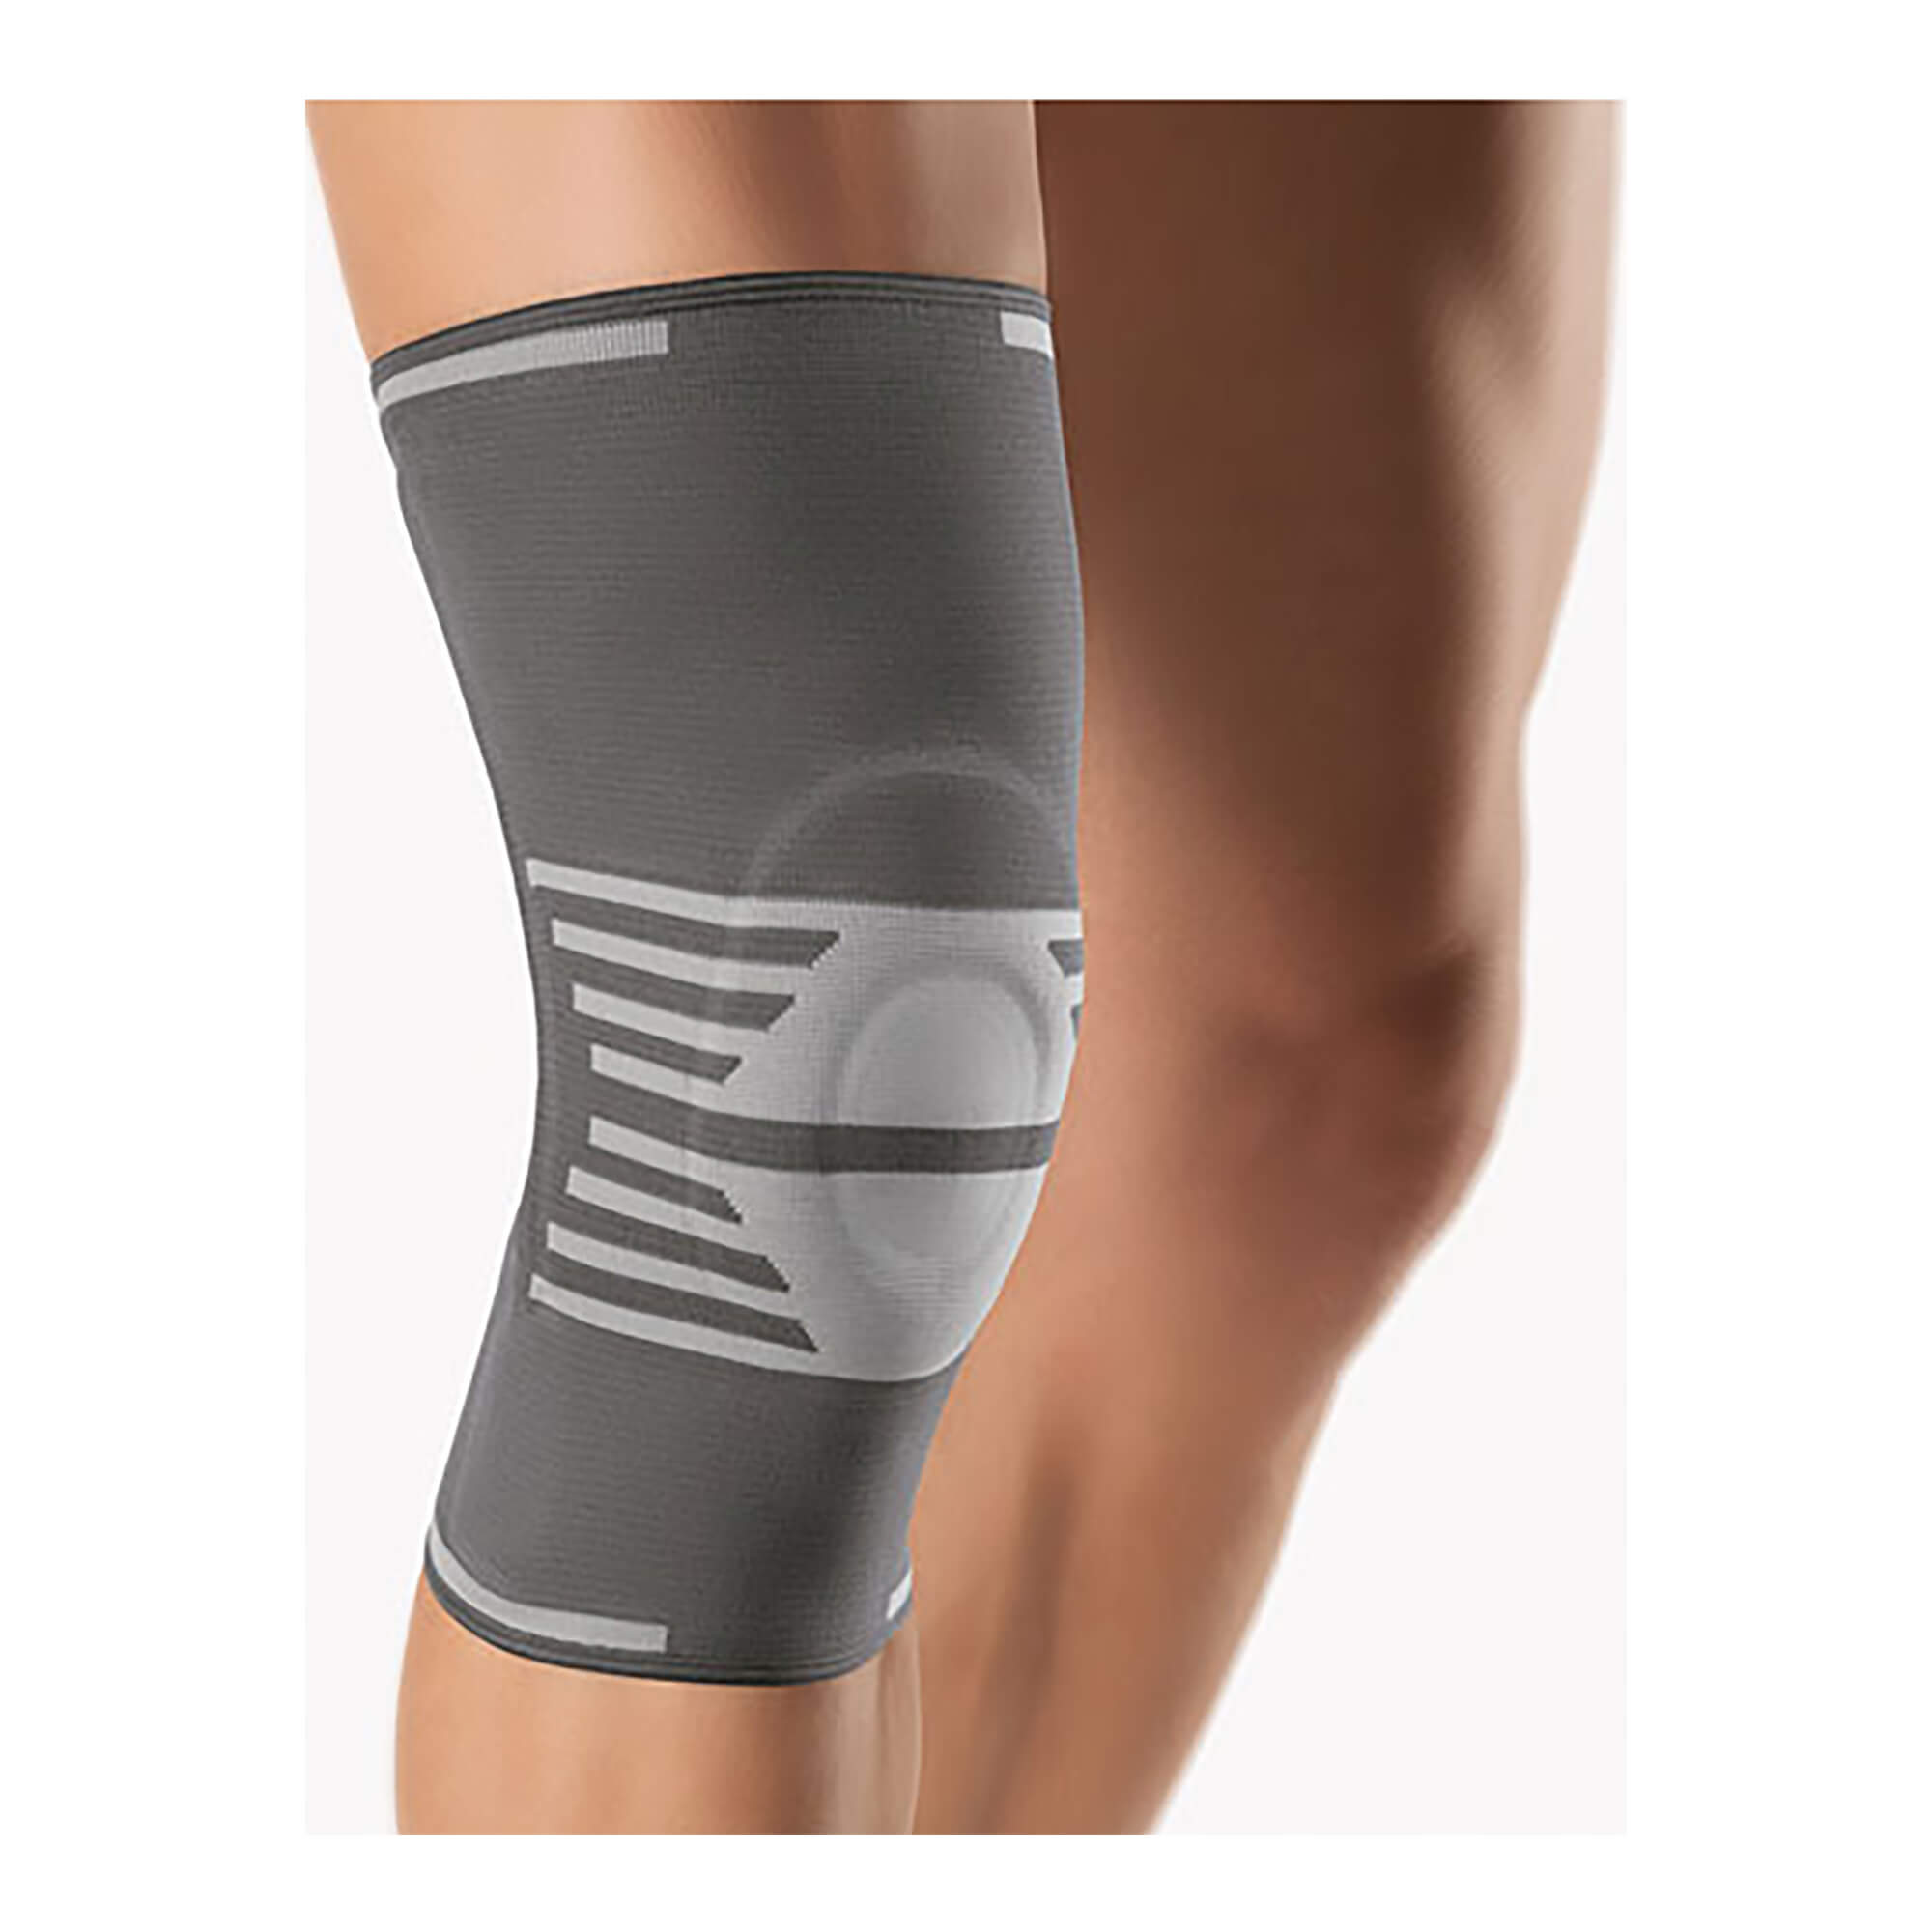 Kniebandage zur Weichteilkompression mit lokaler Druckpelotte aus flexiblem Material um die Kniescheibe.